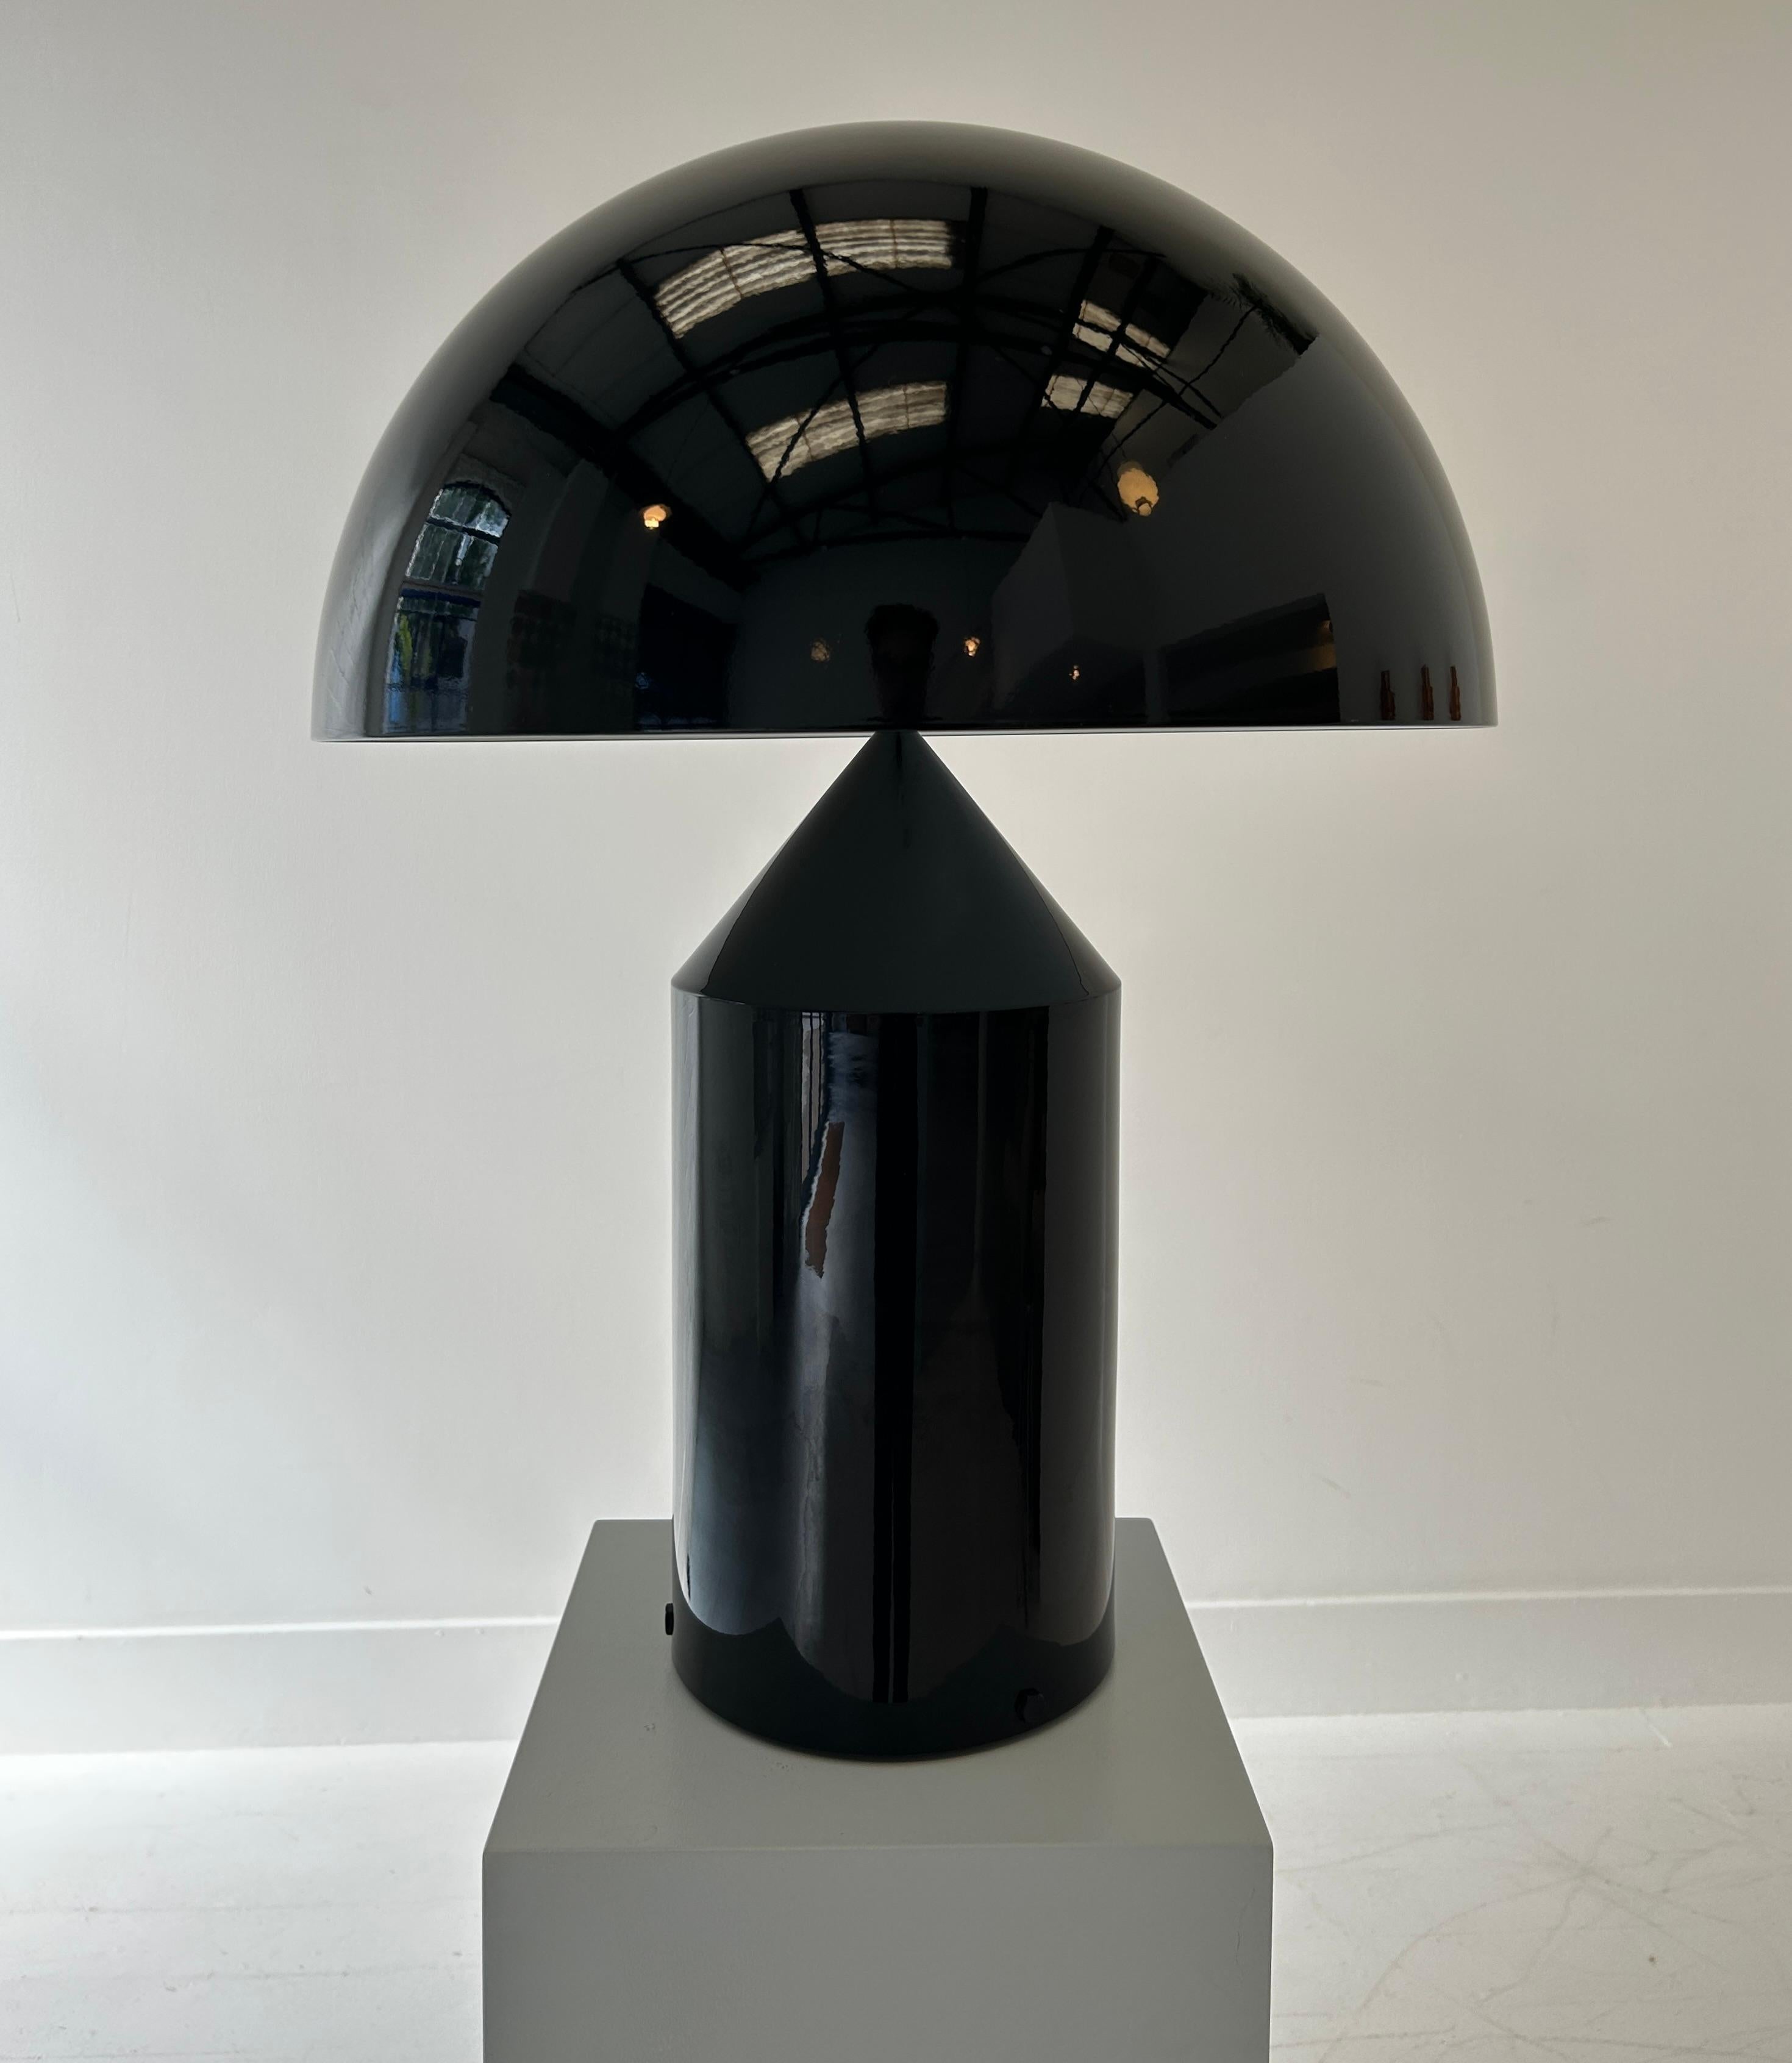 L'archétype de la lampe de table, voici un exemple d'une première édition de la lampe Atollo, finie en aluminium noir brillant. 

Le design classique est universellement connu pour son élégance simpliste et sa robustesse. Conçu à l'origine en 1977